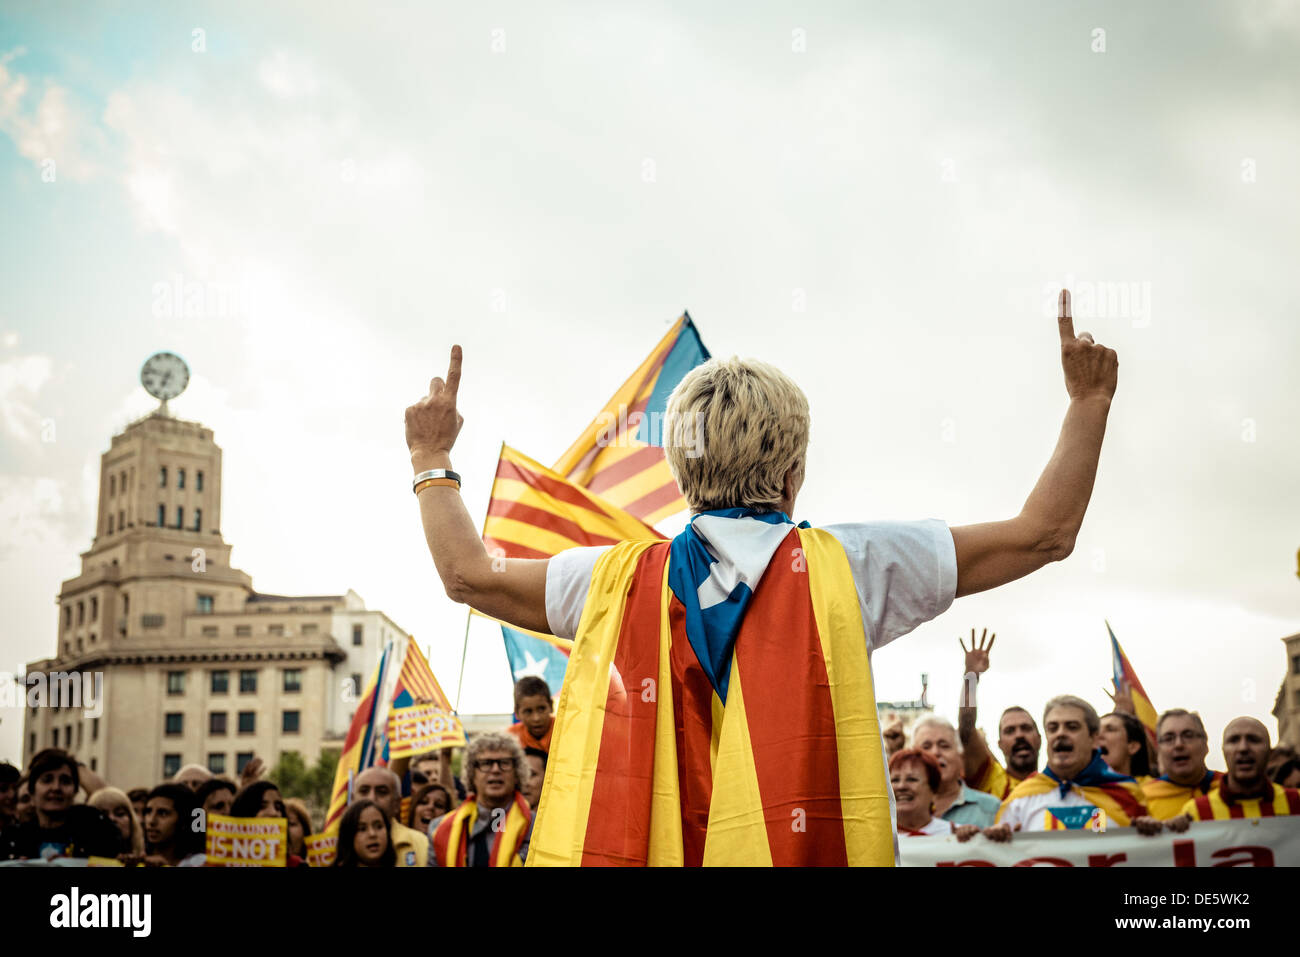 Barcelone, Espagne. 11 septembre 2013 : Un protestataire enveloppée dans un drapeau indépendantiste catalan organiser la pro-indépendance mars à la ville de Barcelone sur la Catalogne, la fête nationale © matthi/Alamy Live News Banque D'Images